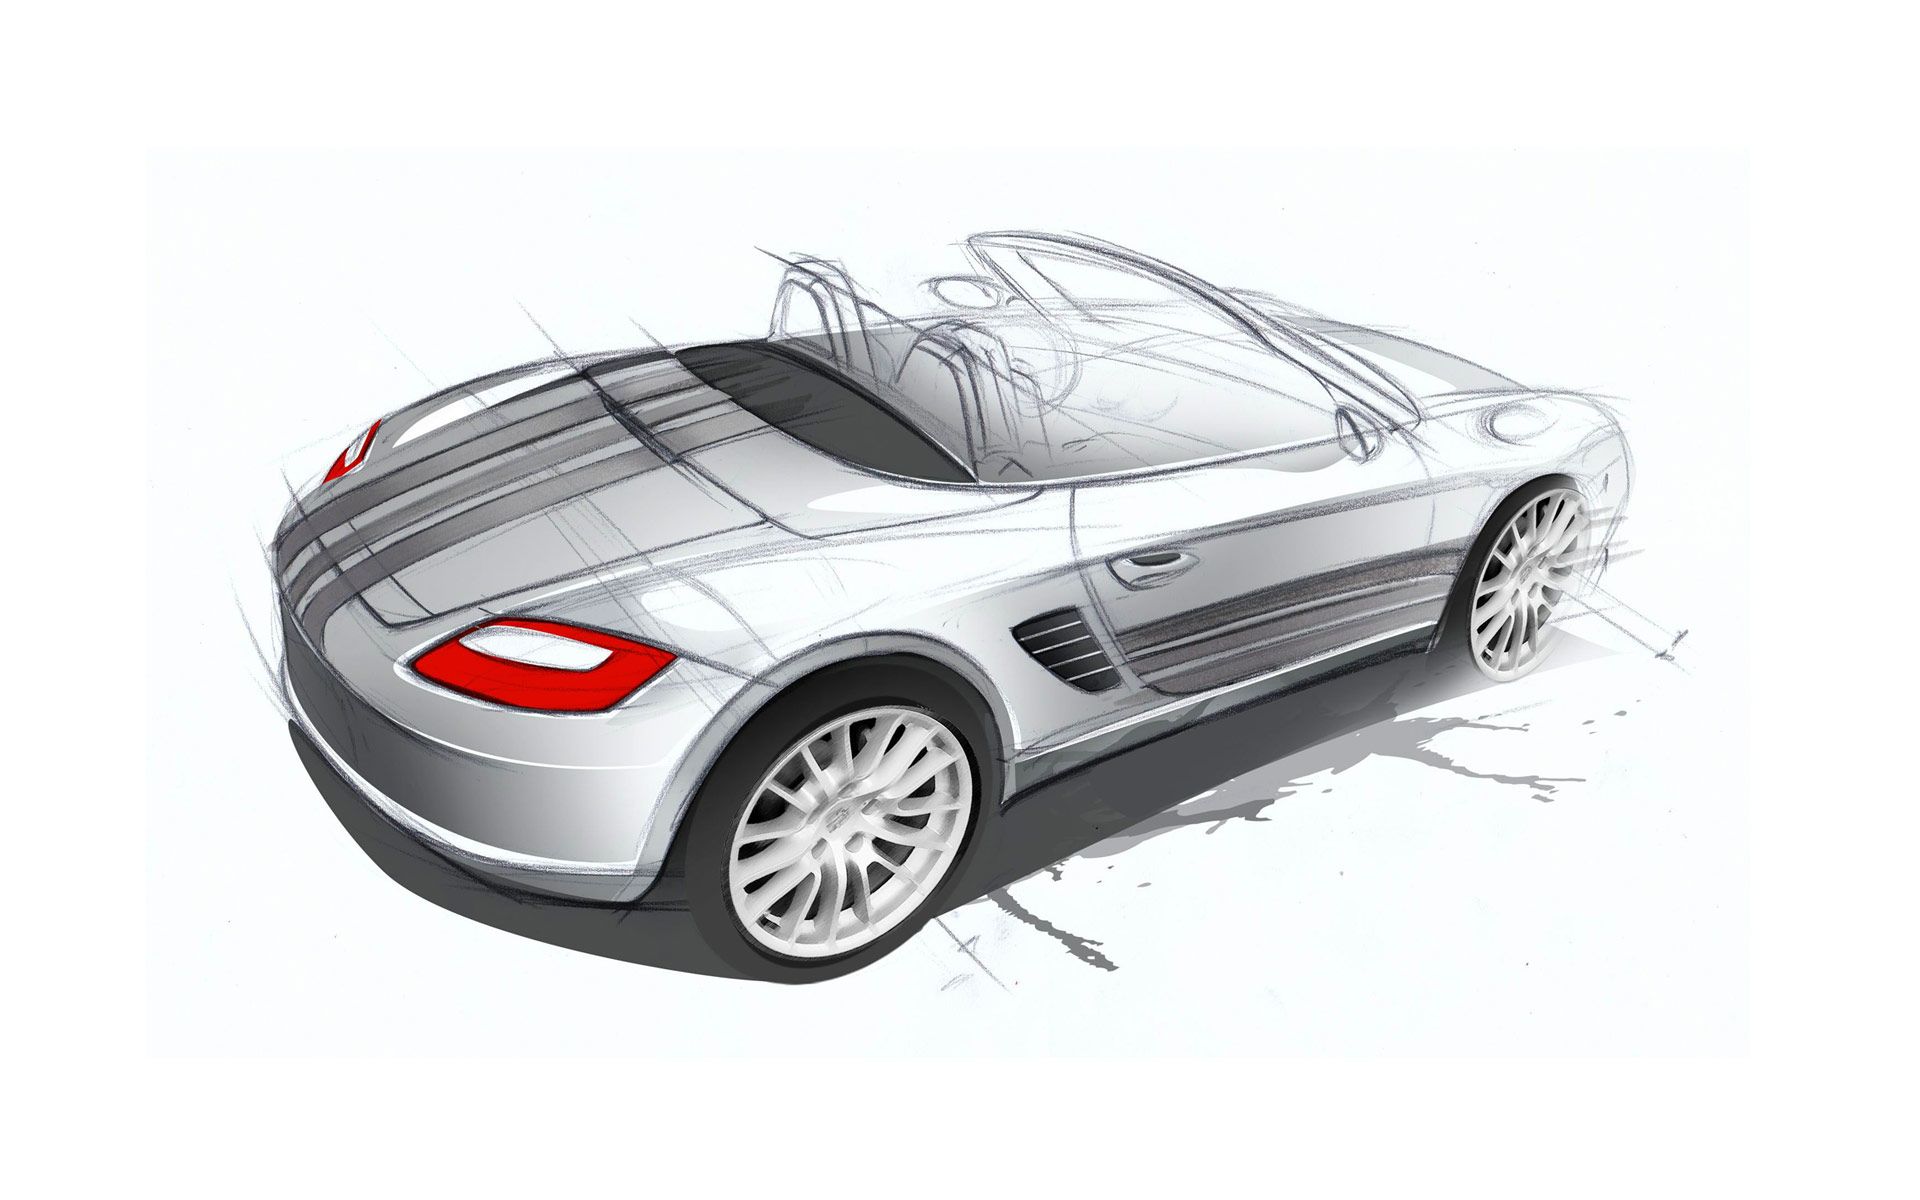 2008 Porsche Boxster S Design Edition 2